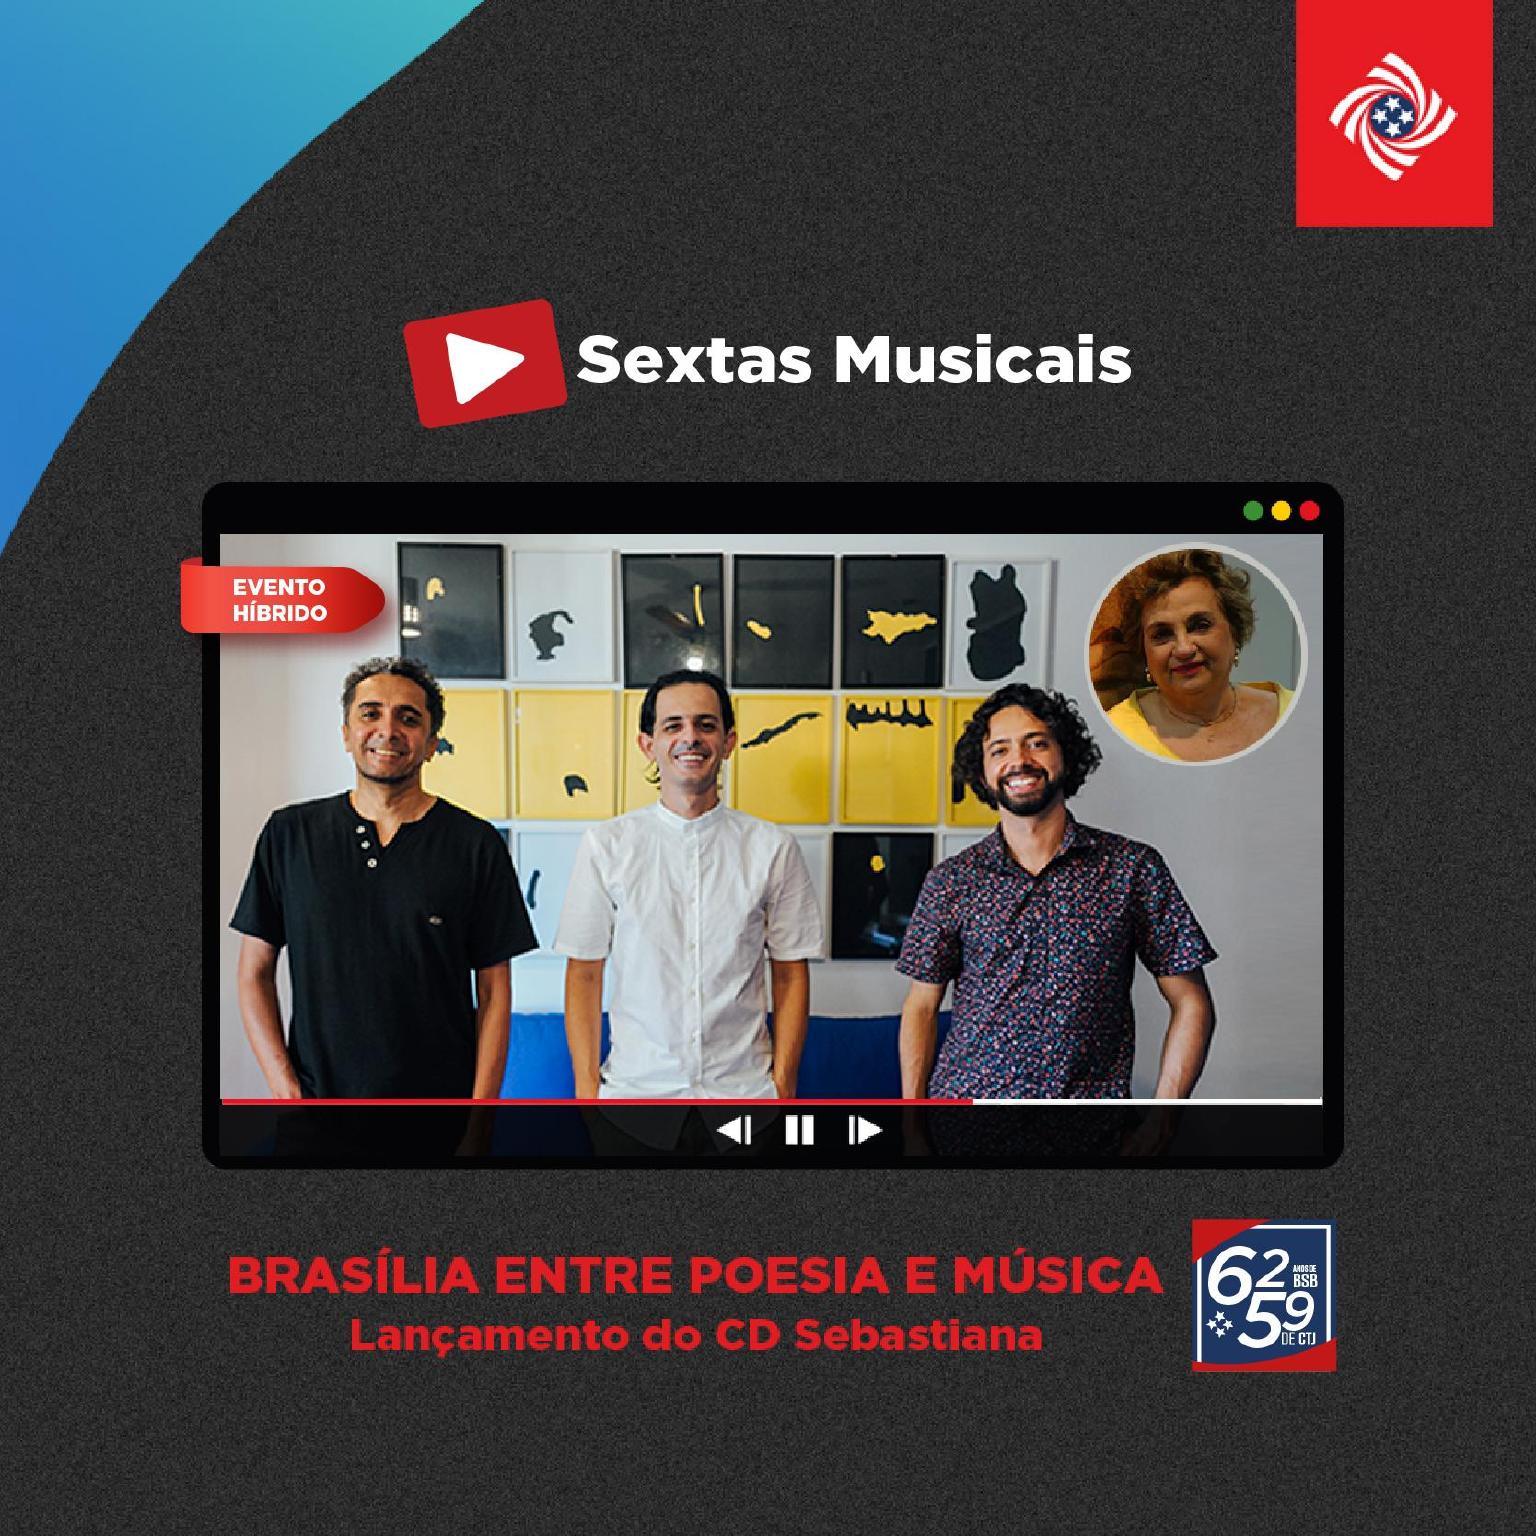 Sextas Musicais - Live Streaming: Brasília entre poesia e música